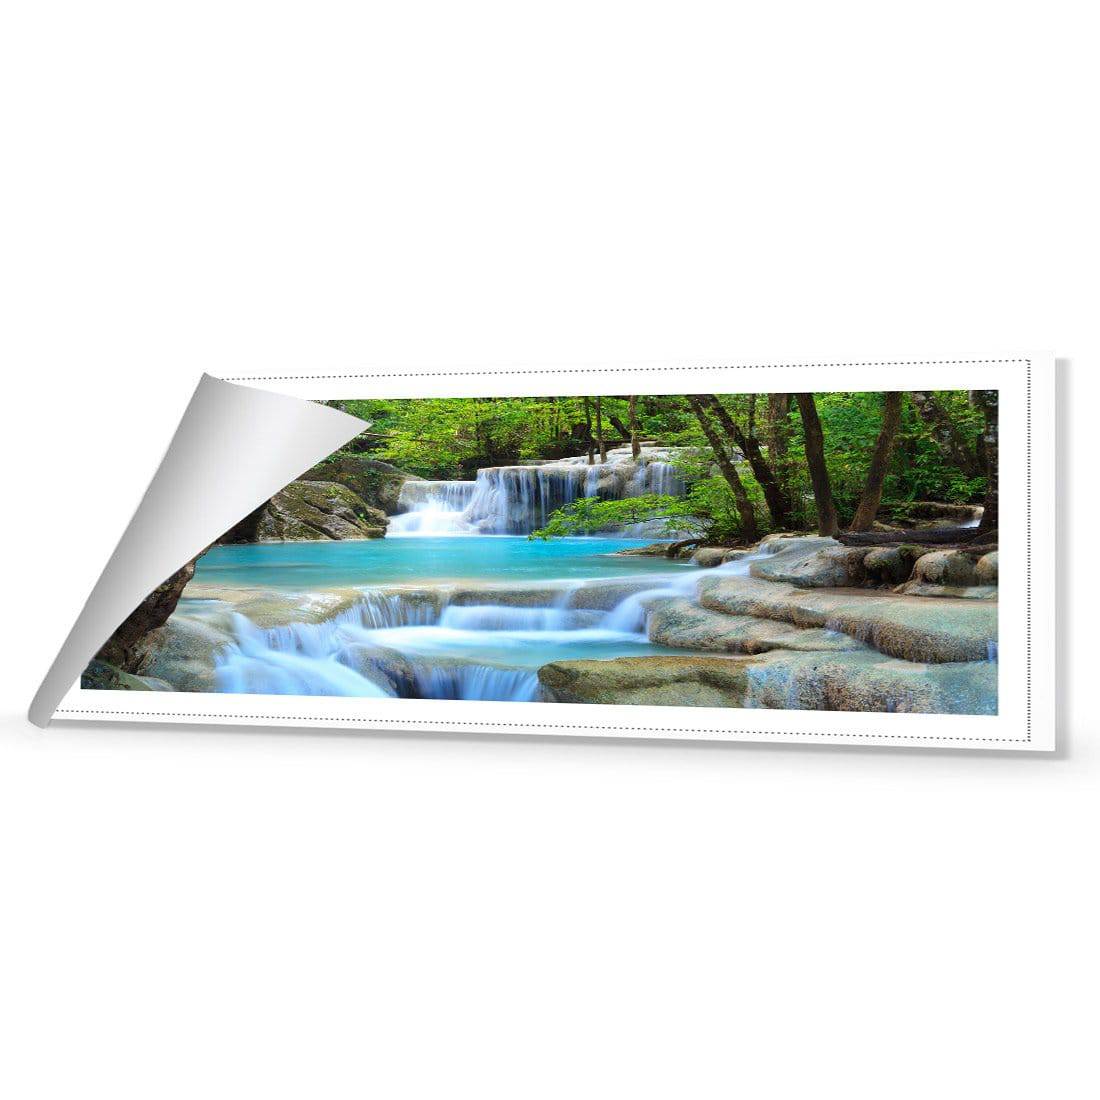 Soft Waterfalls Canvas Art-Canvas-Wall Art Designs-60x20cm-Rolled Canvas-Wall Art Designs